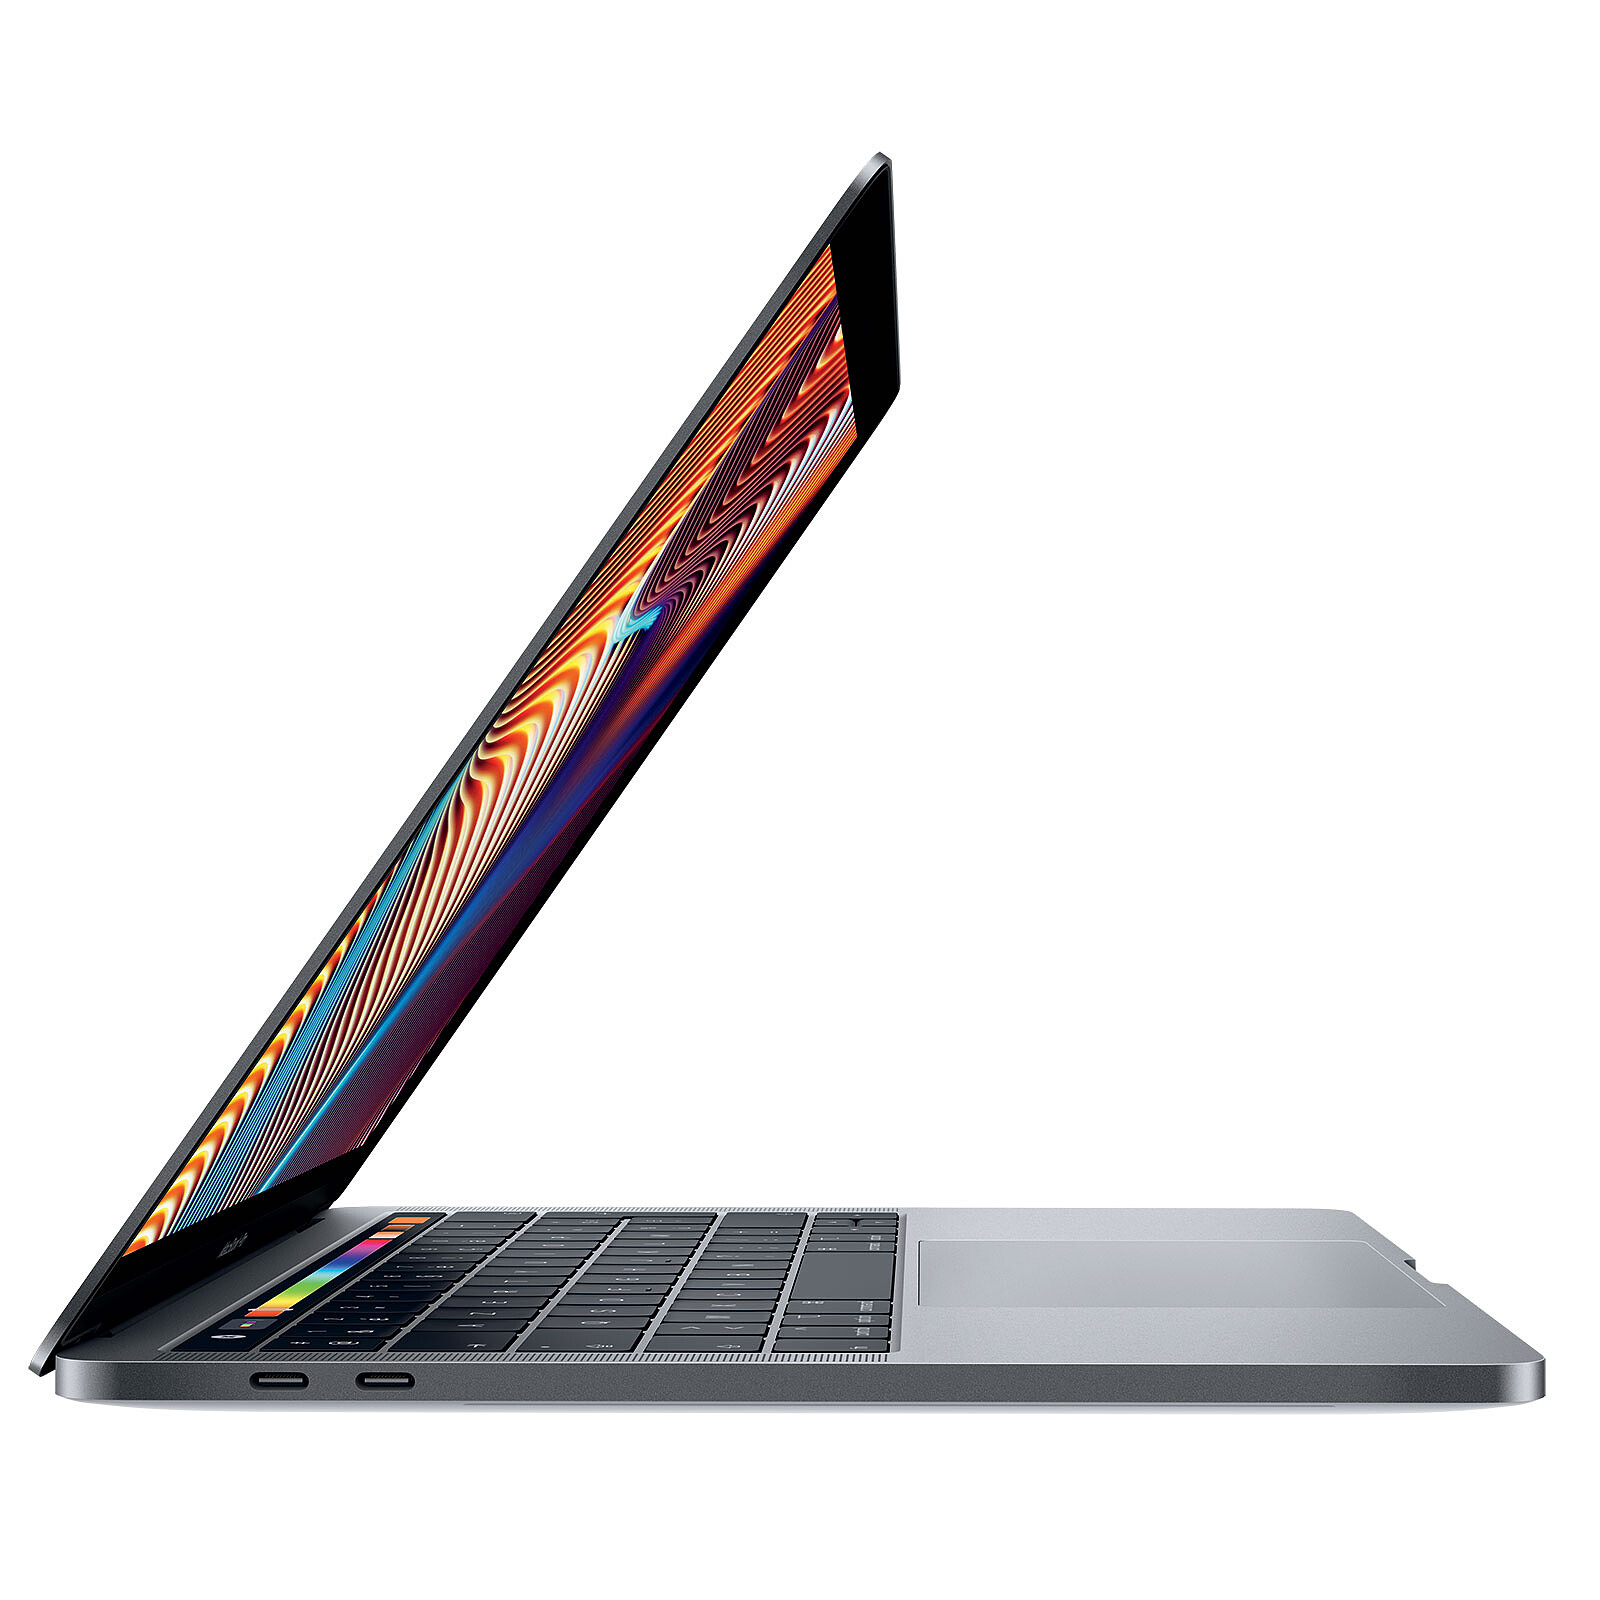 Apple MacBook Pro (2019) 13 avec Touch Bar Gris sidéral (MUHN2FN/A) ·  Reconditionné - MacBook reconditionné - LDLC